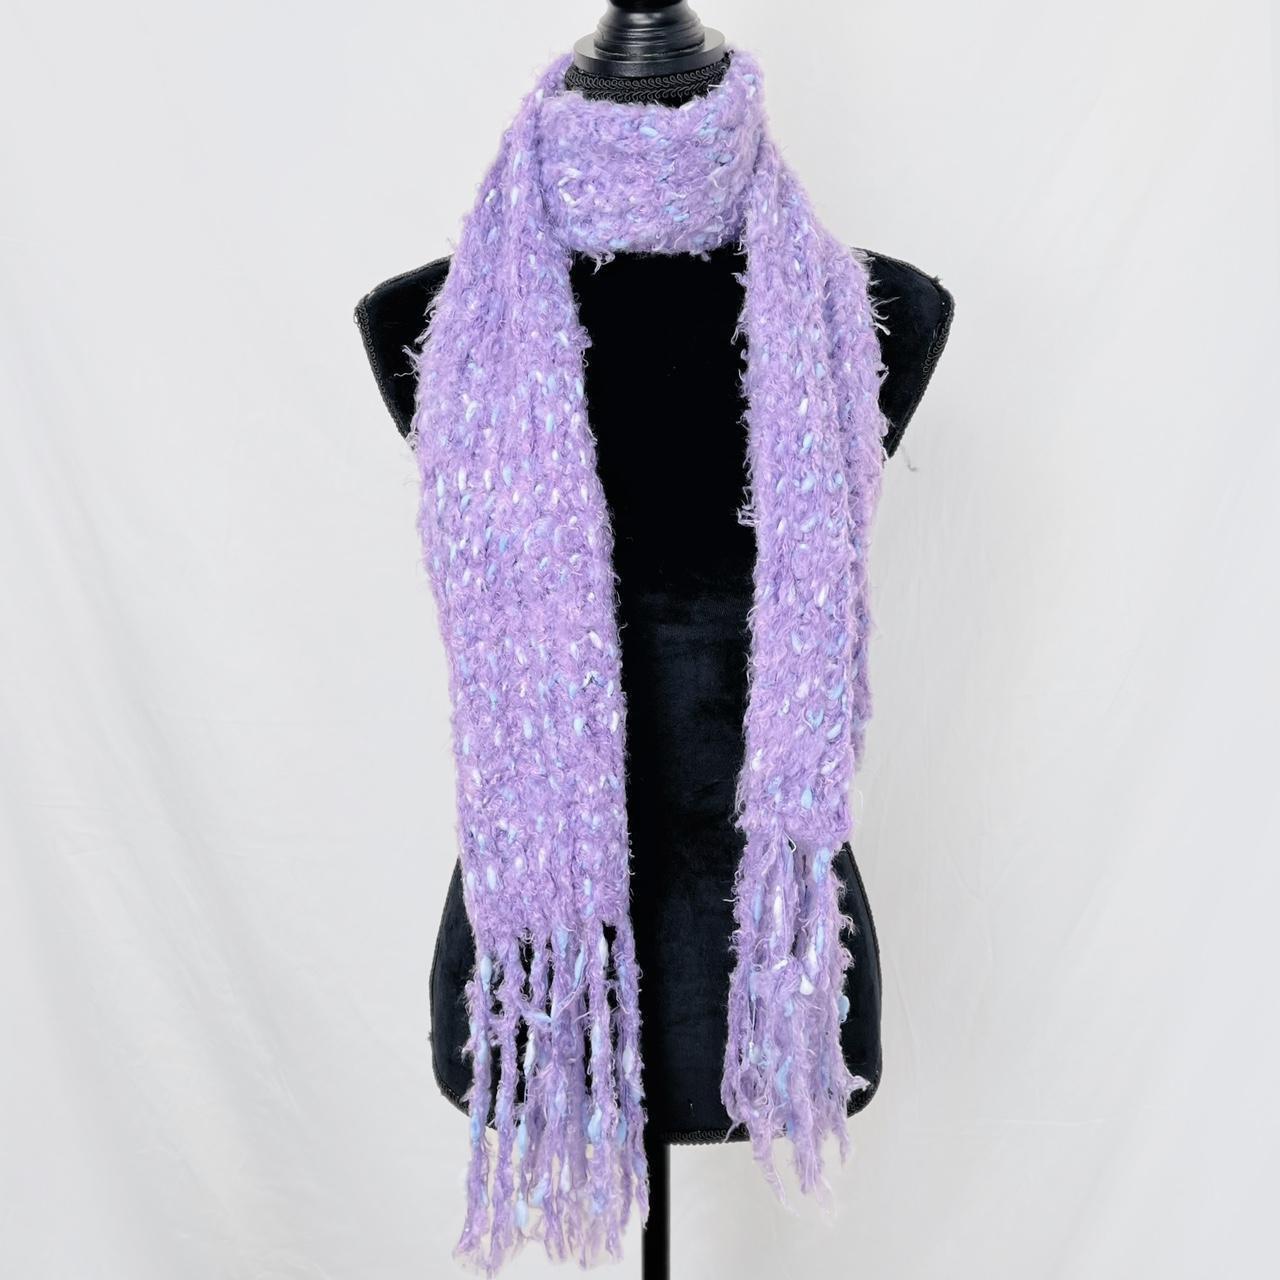 Vintage purple shaggy fringe knit scarf Made in... - Depop